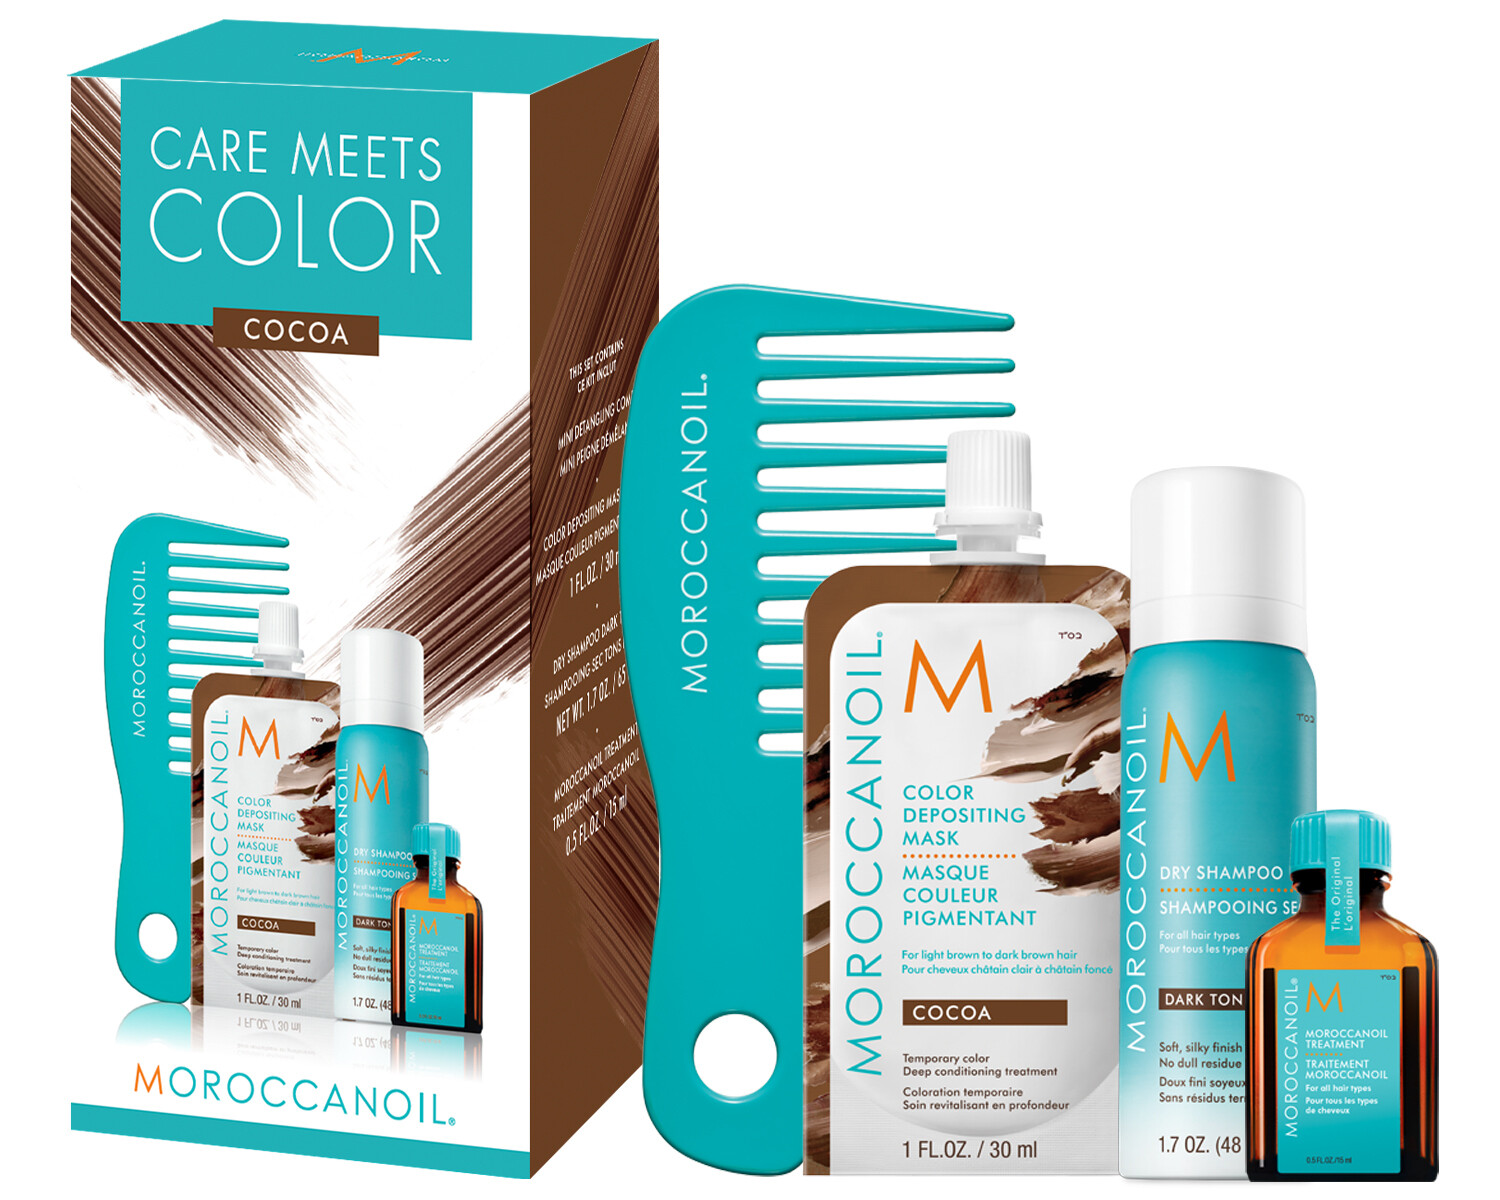 Moroccanoil | Coffret Care Meets Color Cocoa